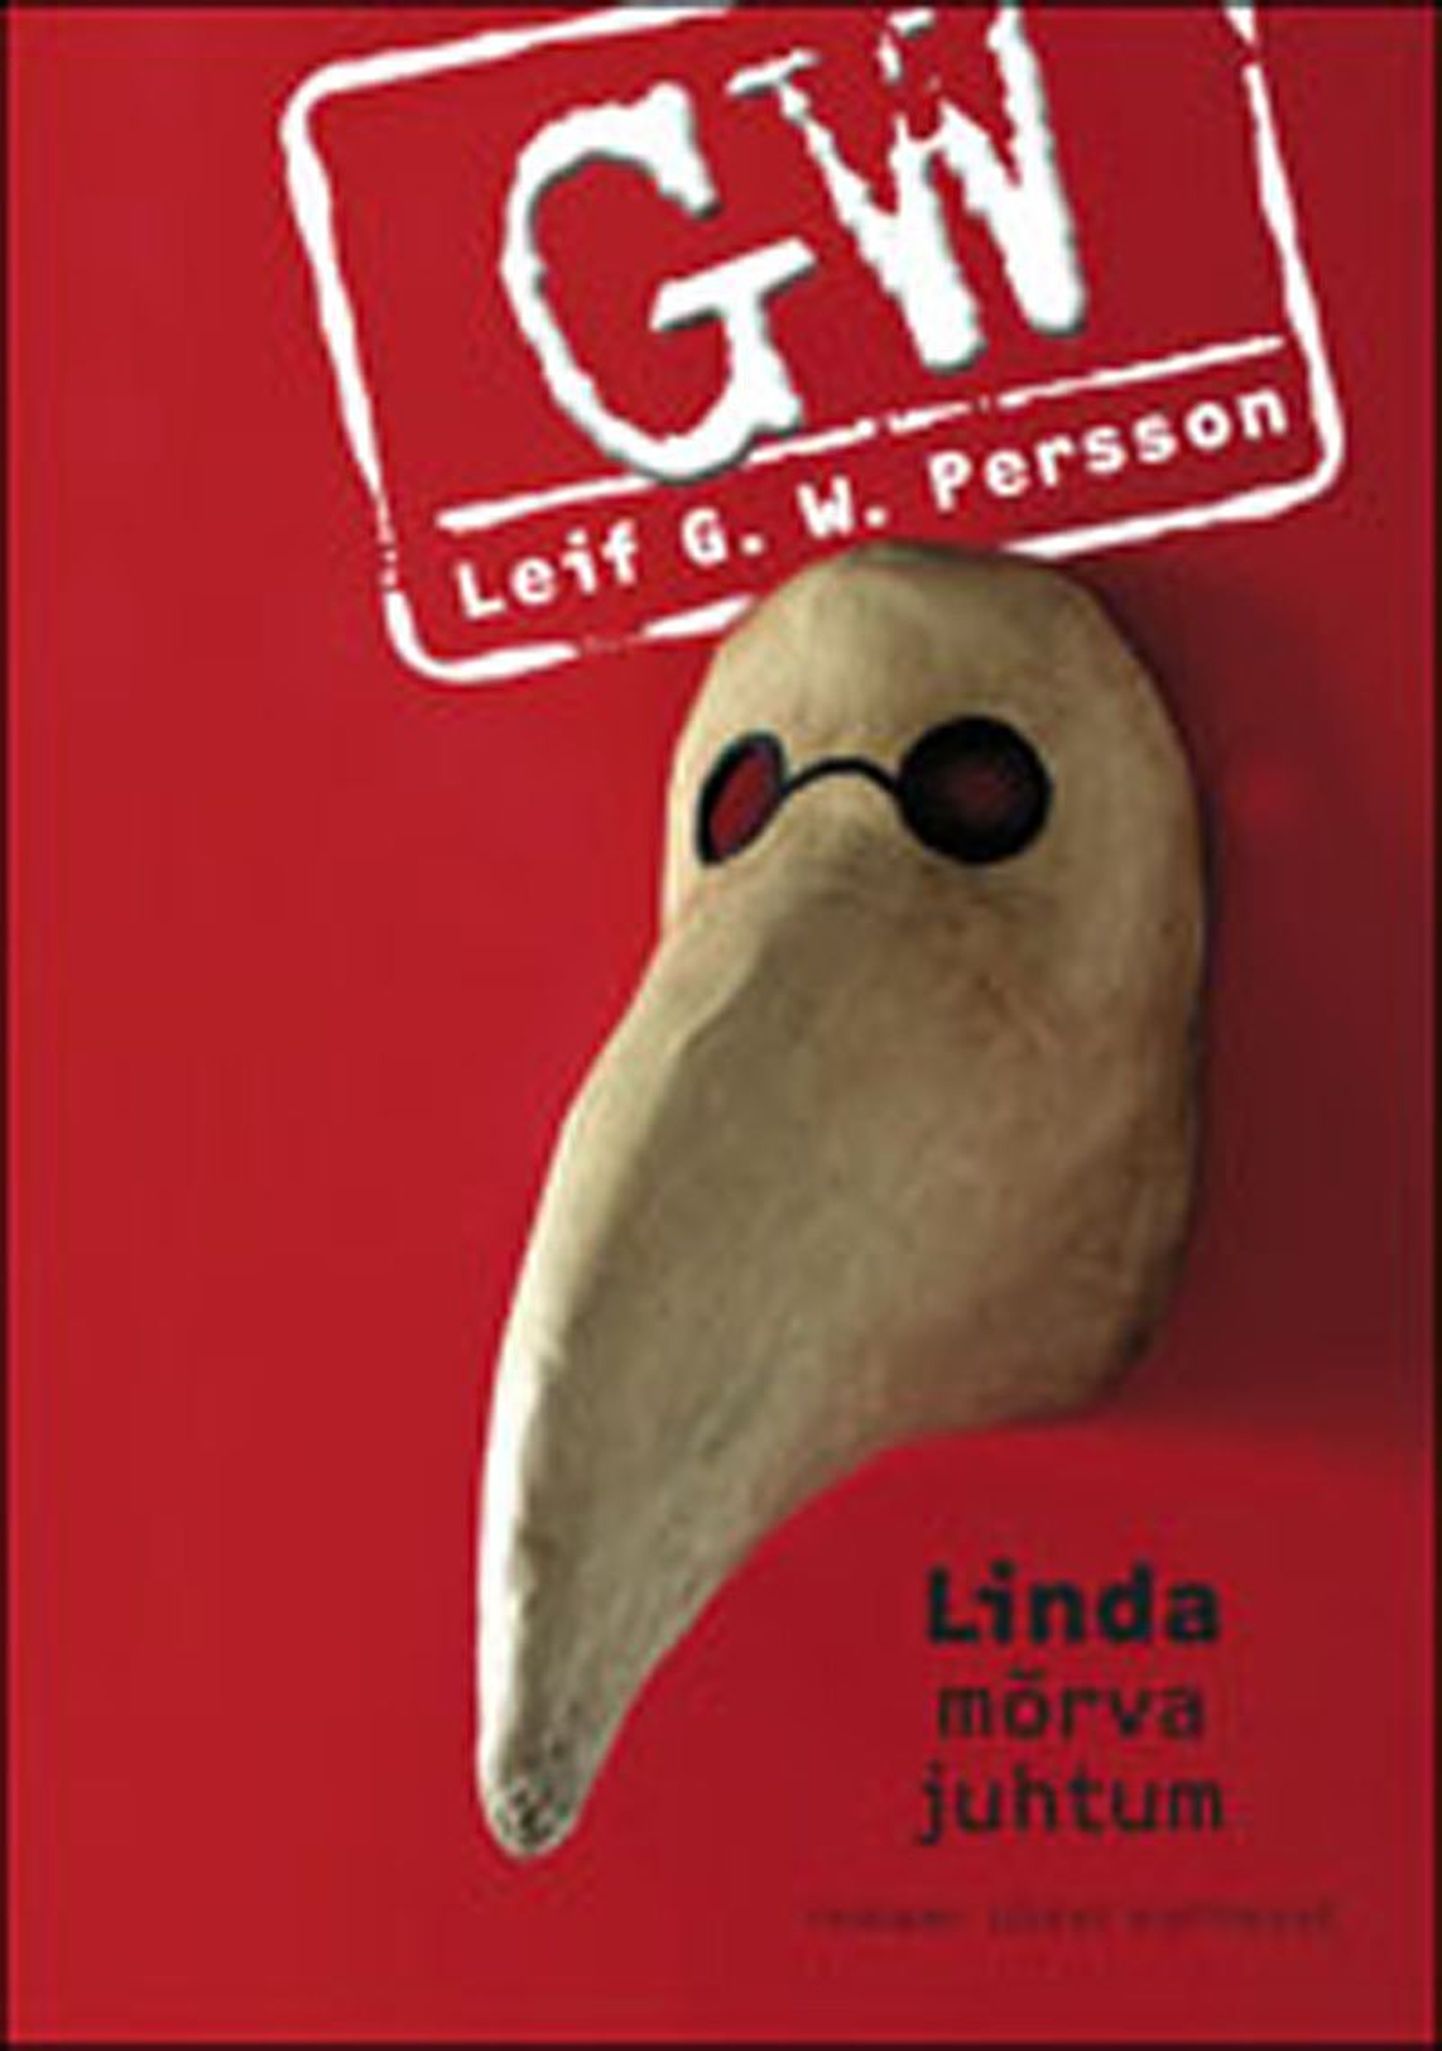 Leif G. W. Persson “Linda mõrva juhtum”